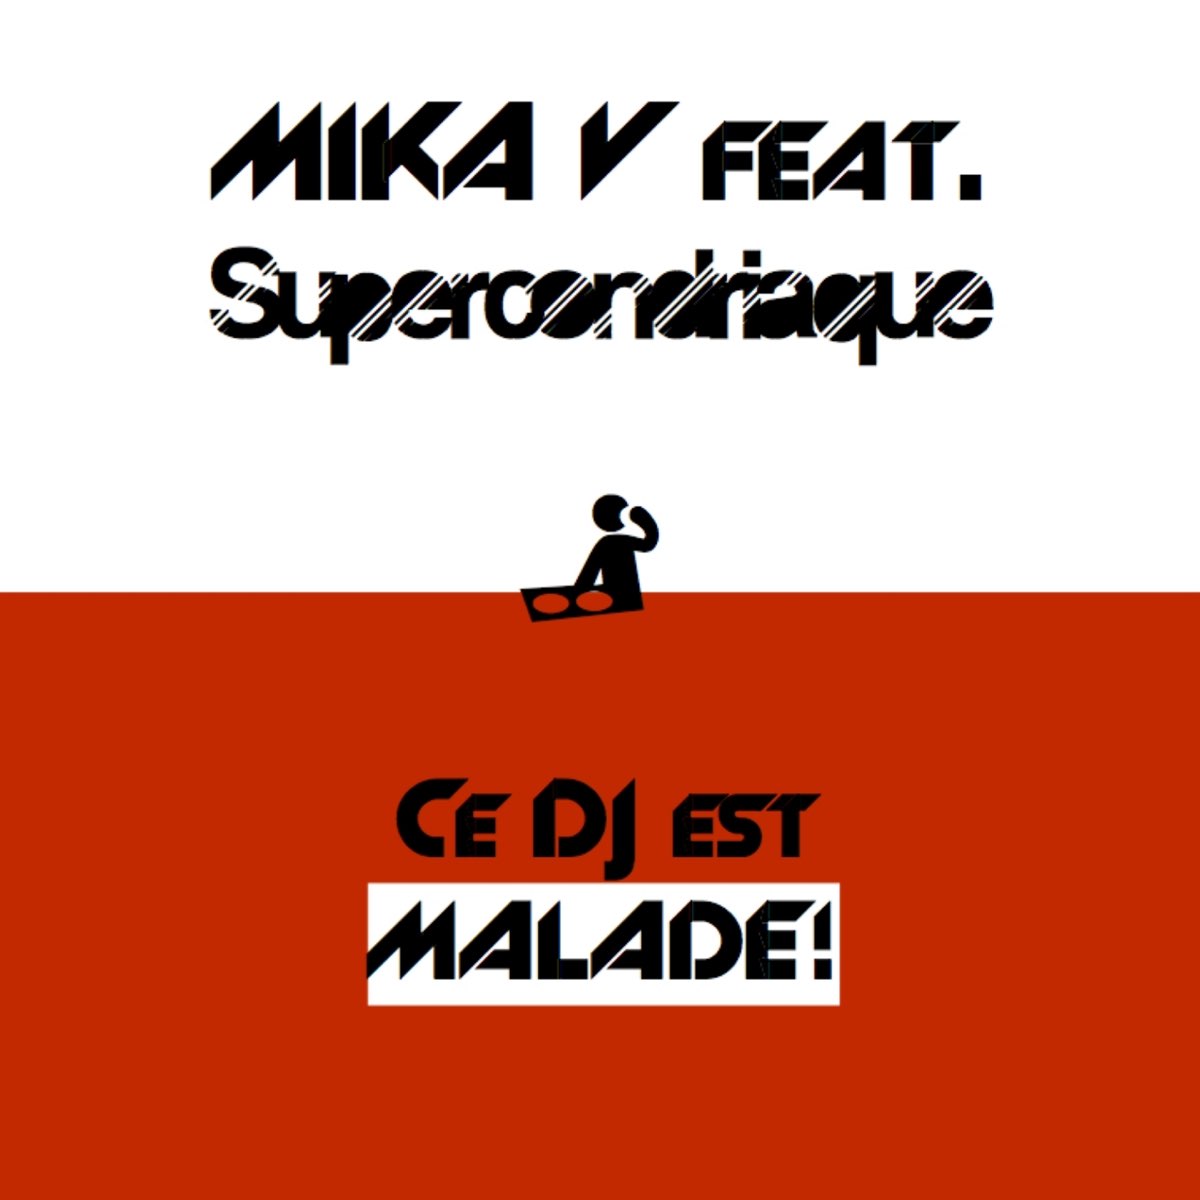 Mika feat. Malade Lyrics. Mika v.